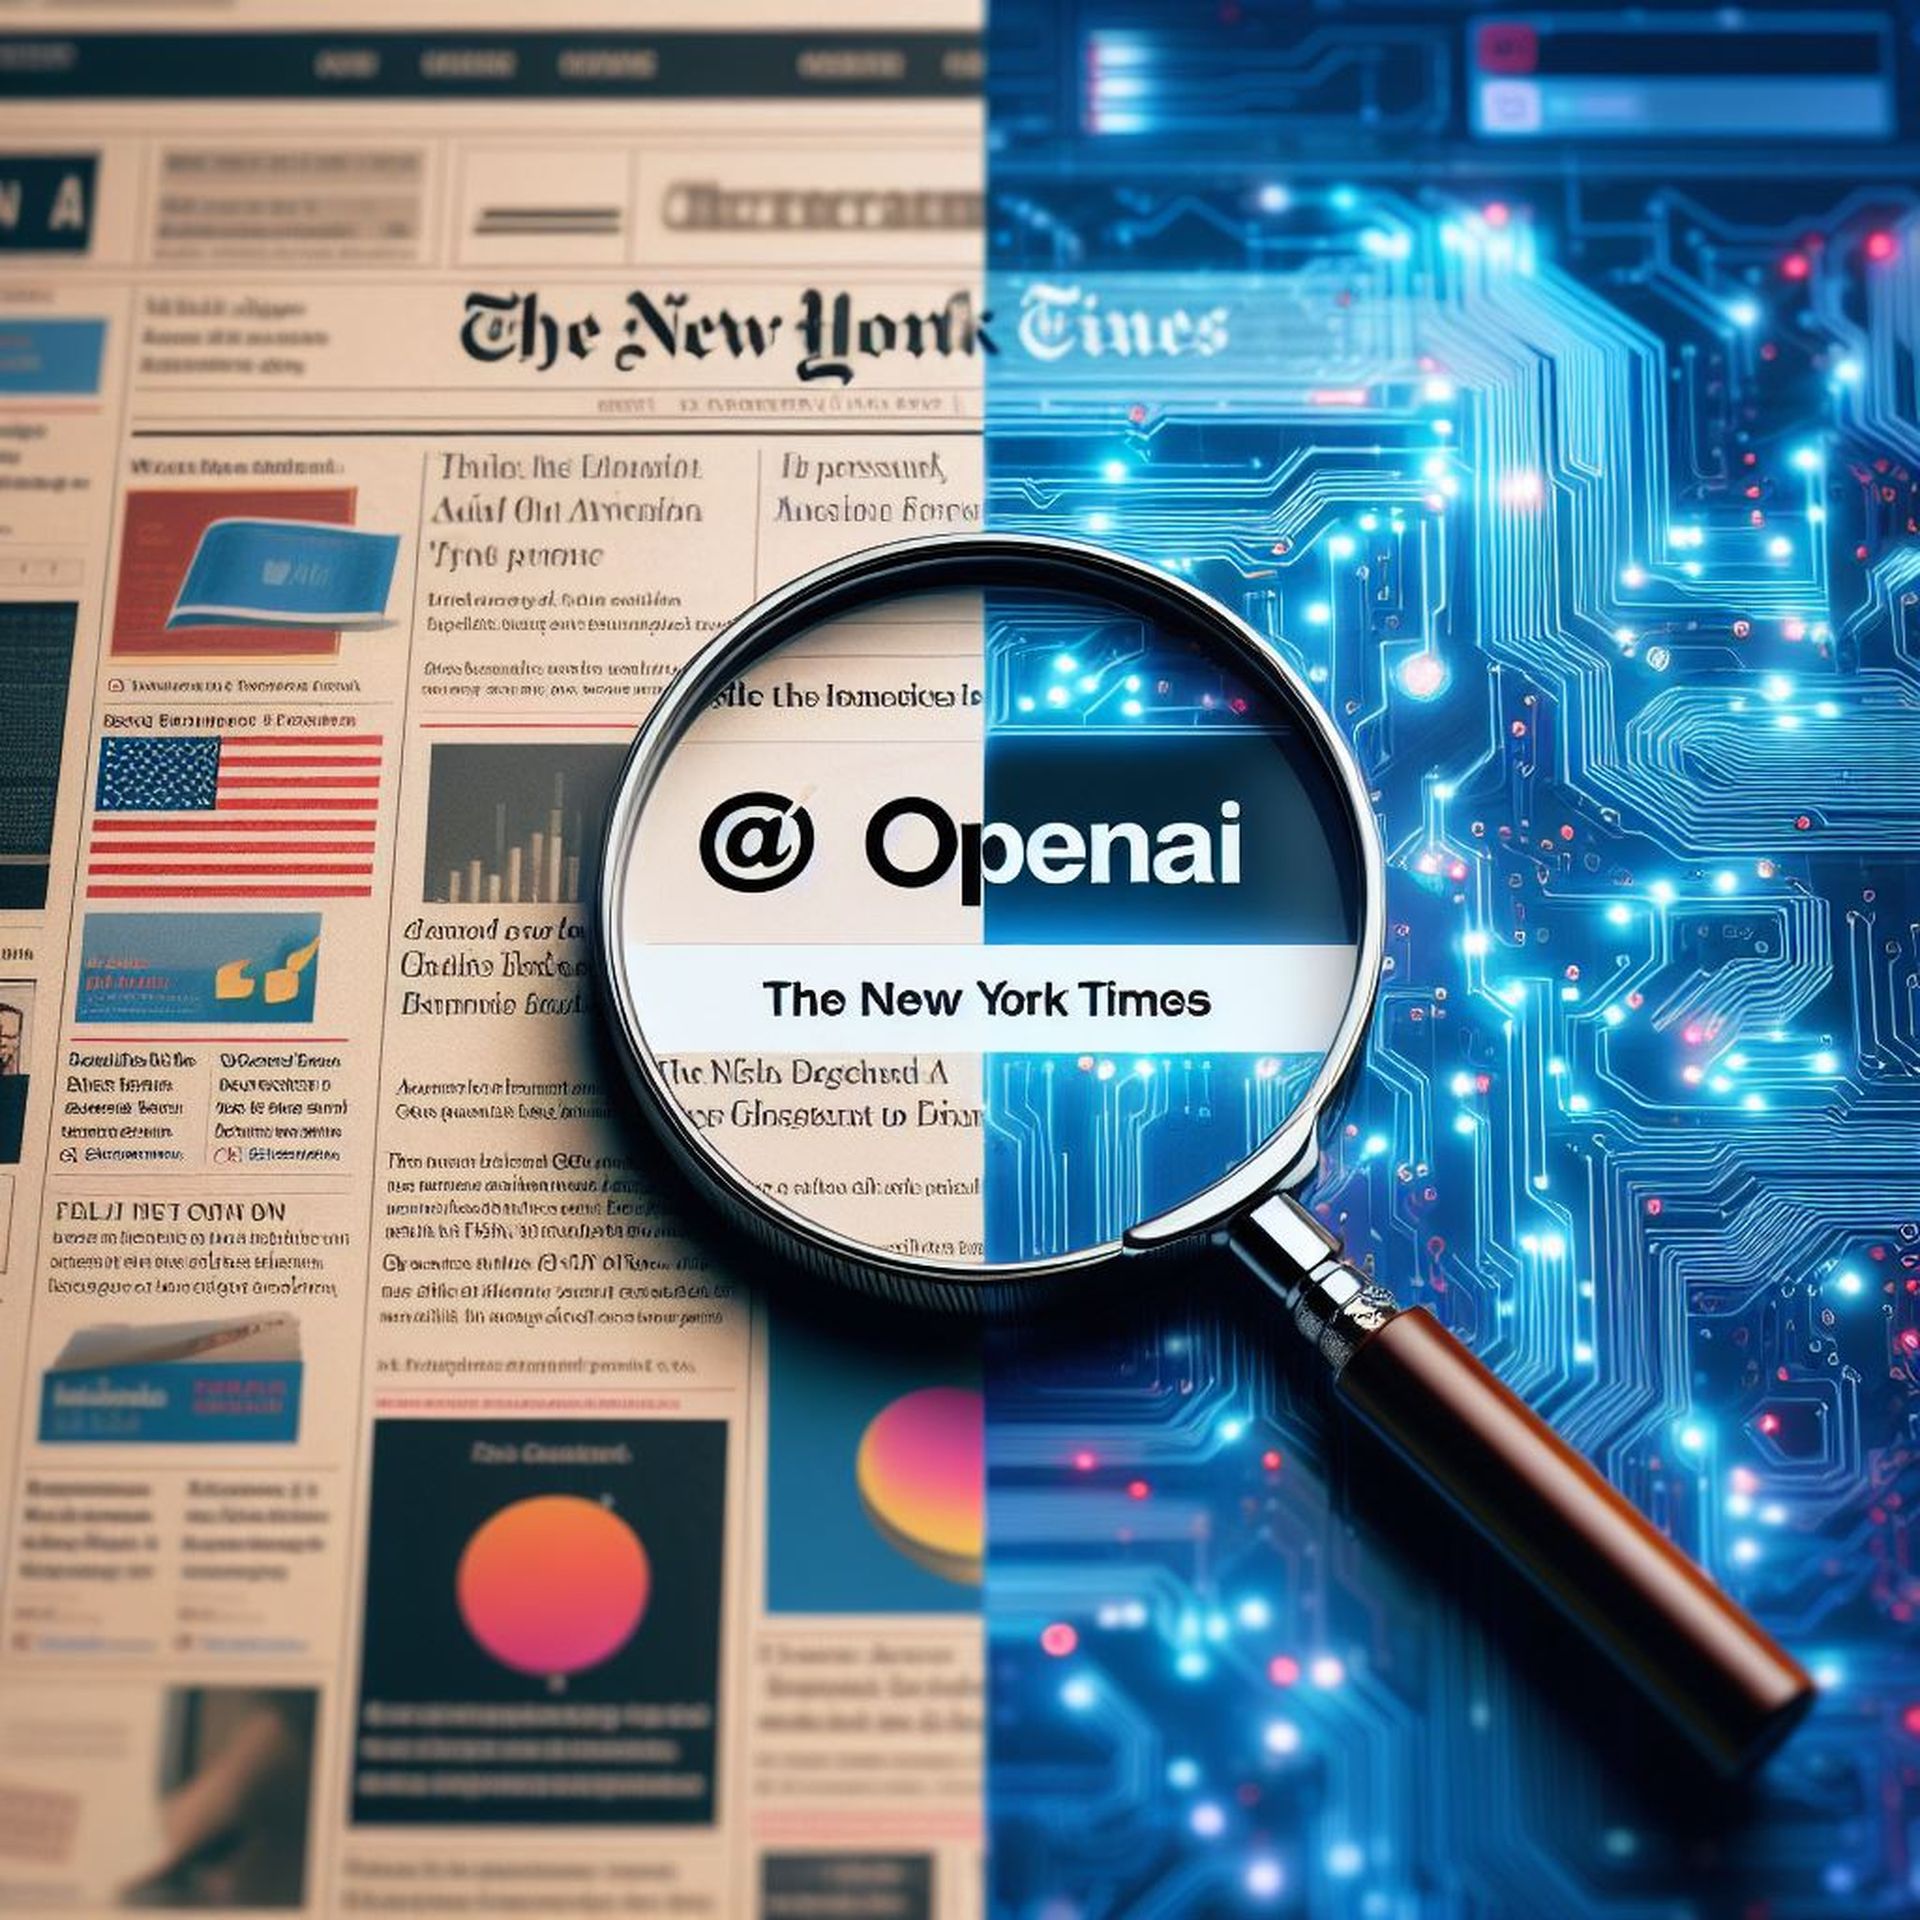 Vermeende hypocrisie: de tegenvordering van OpenAI tegen NYT